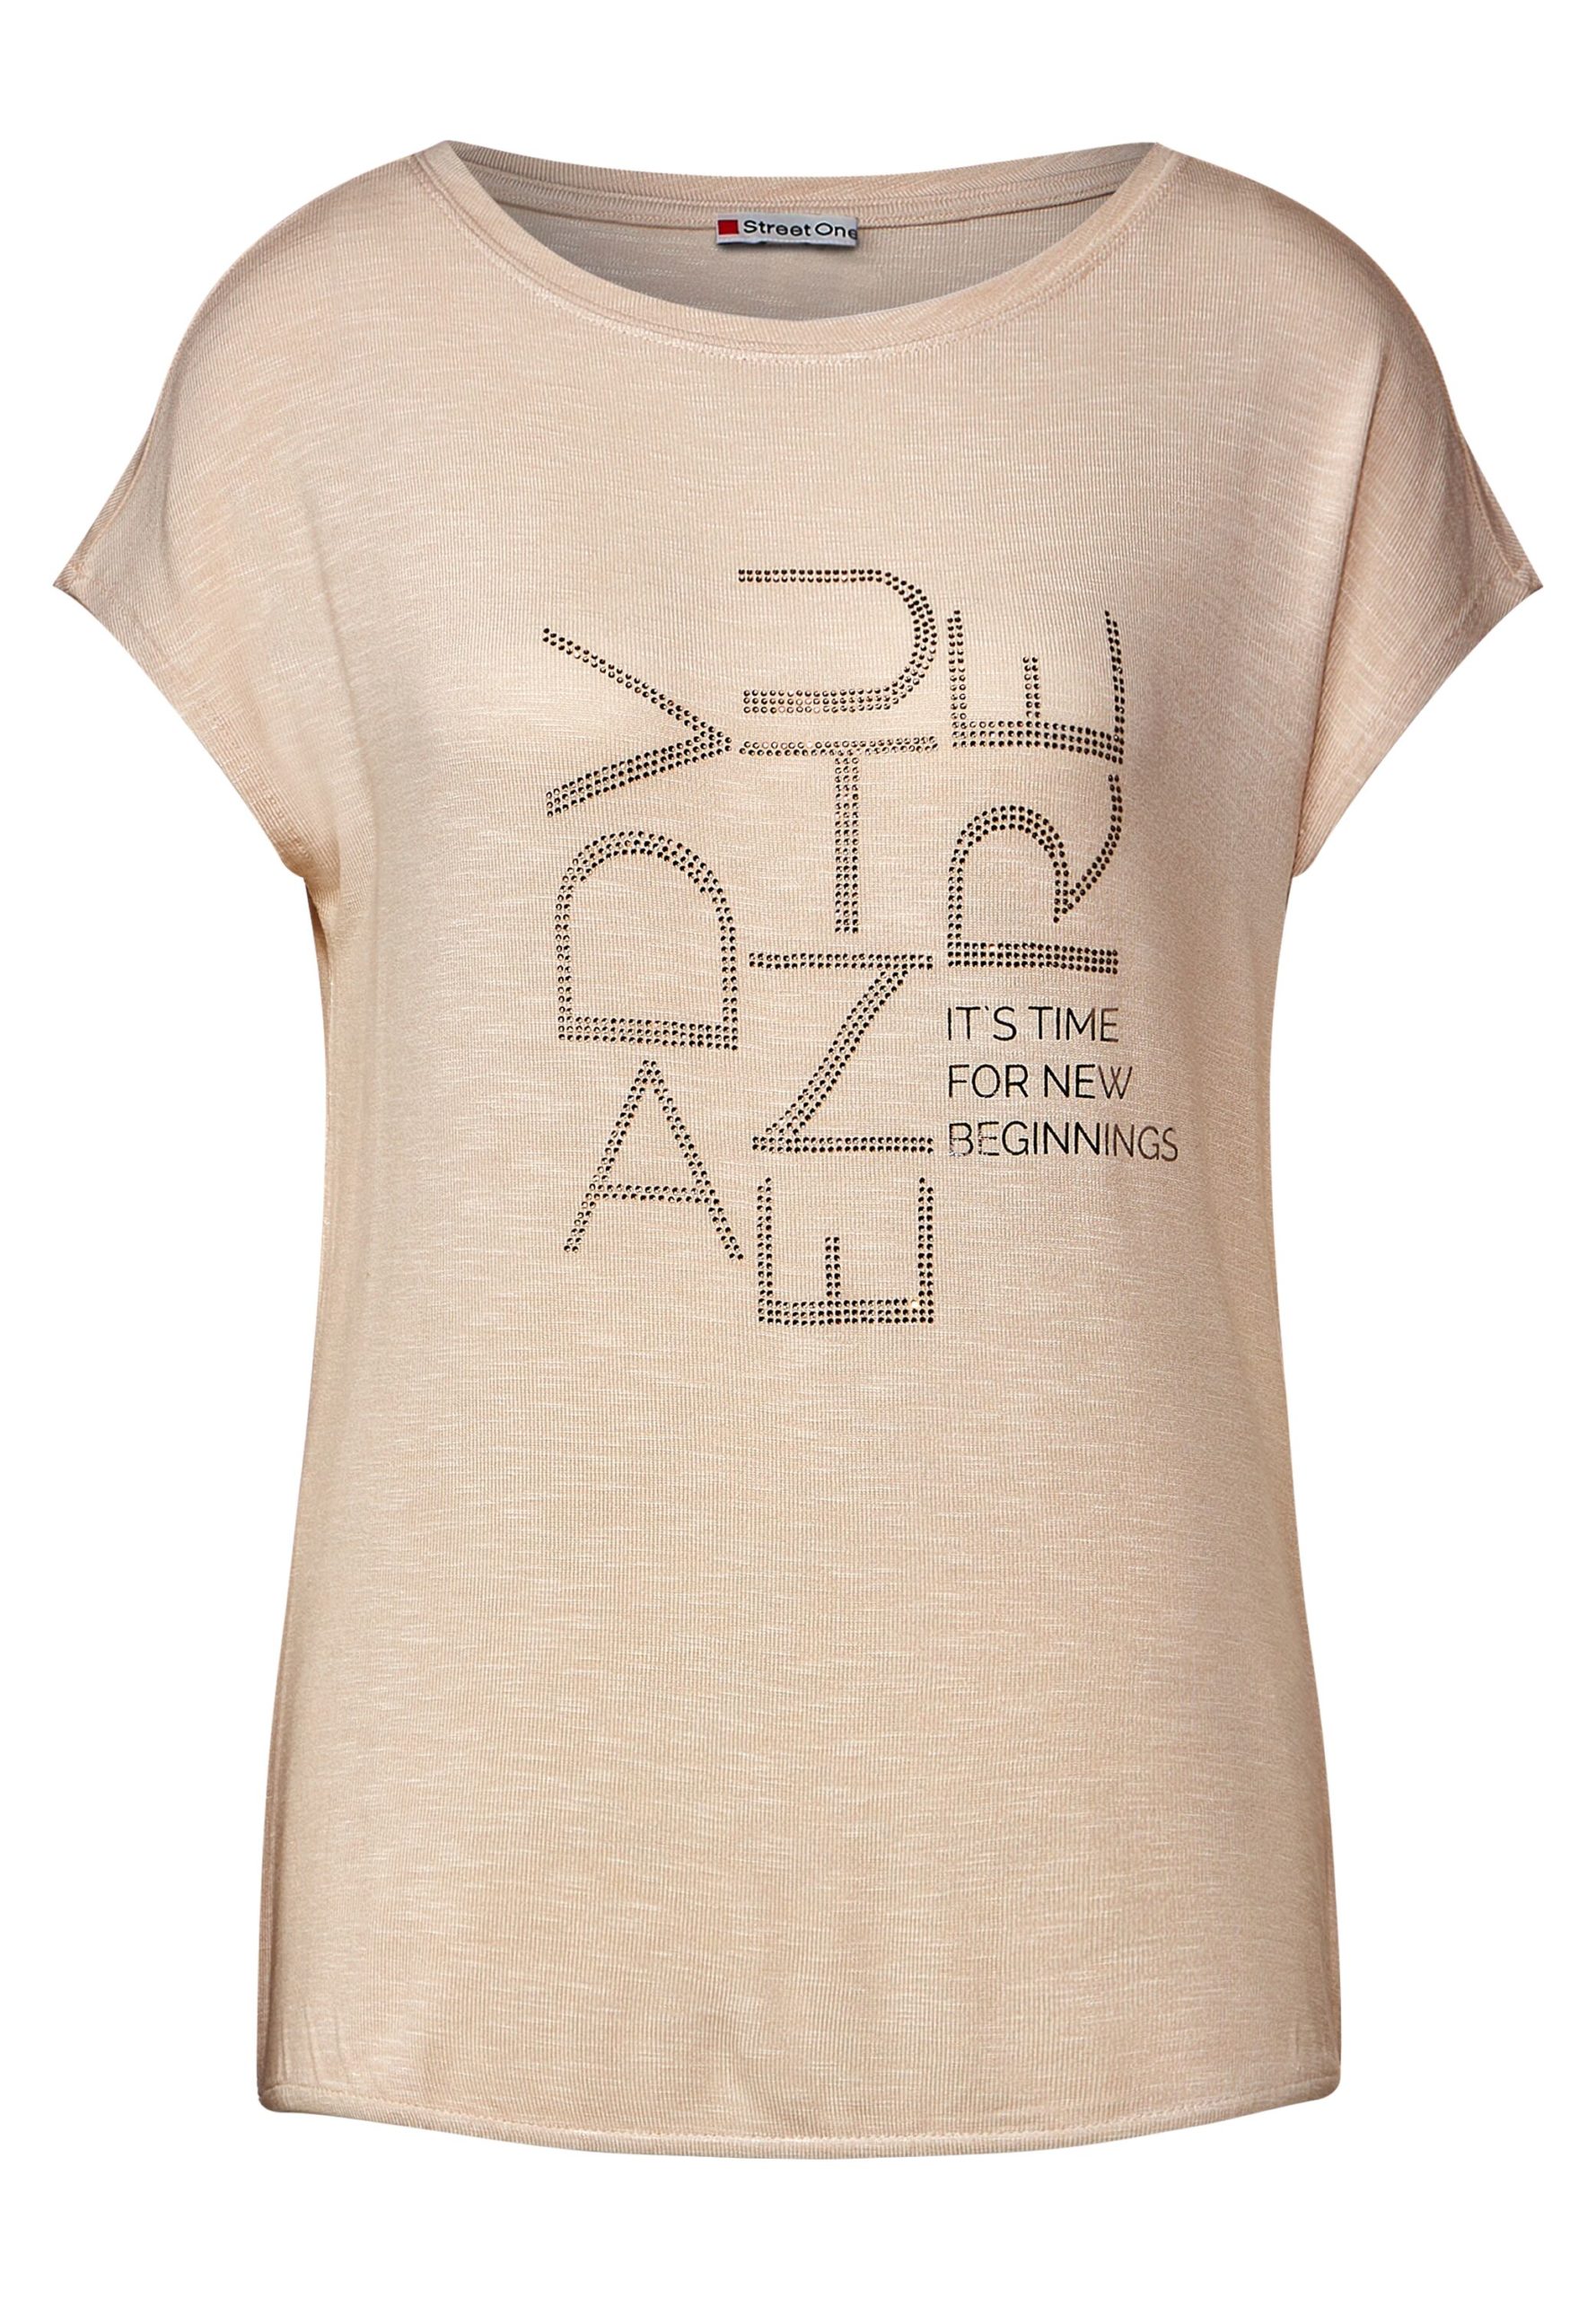 T-Shirt mit Steinchenwording - von Mode Street One Onlineshop Flach